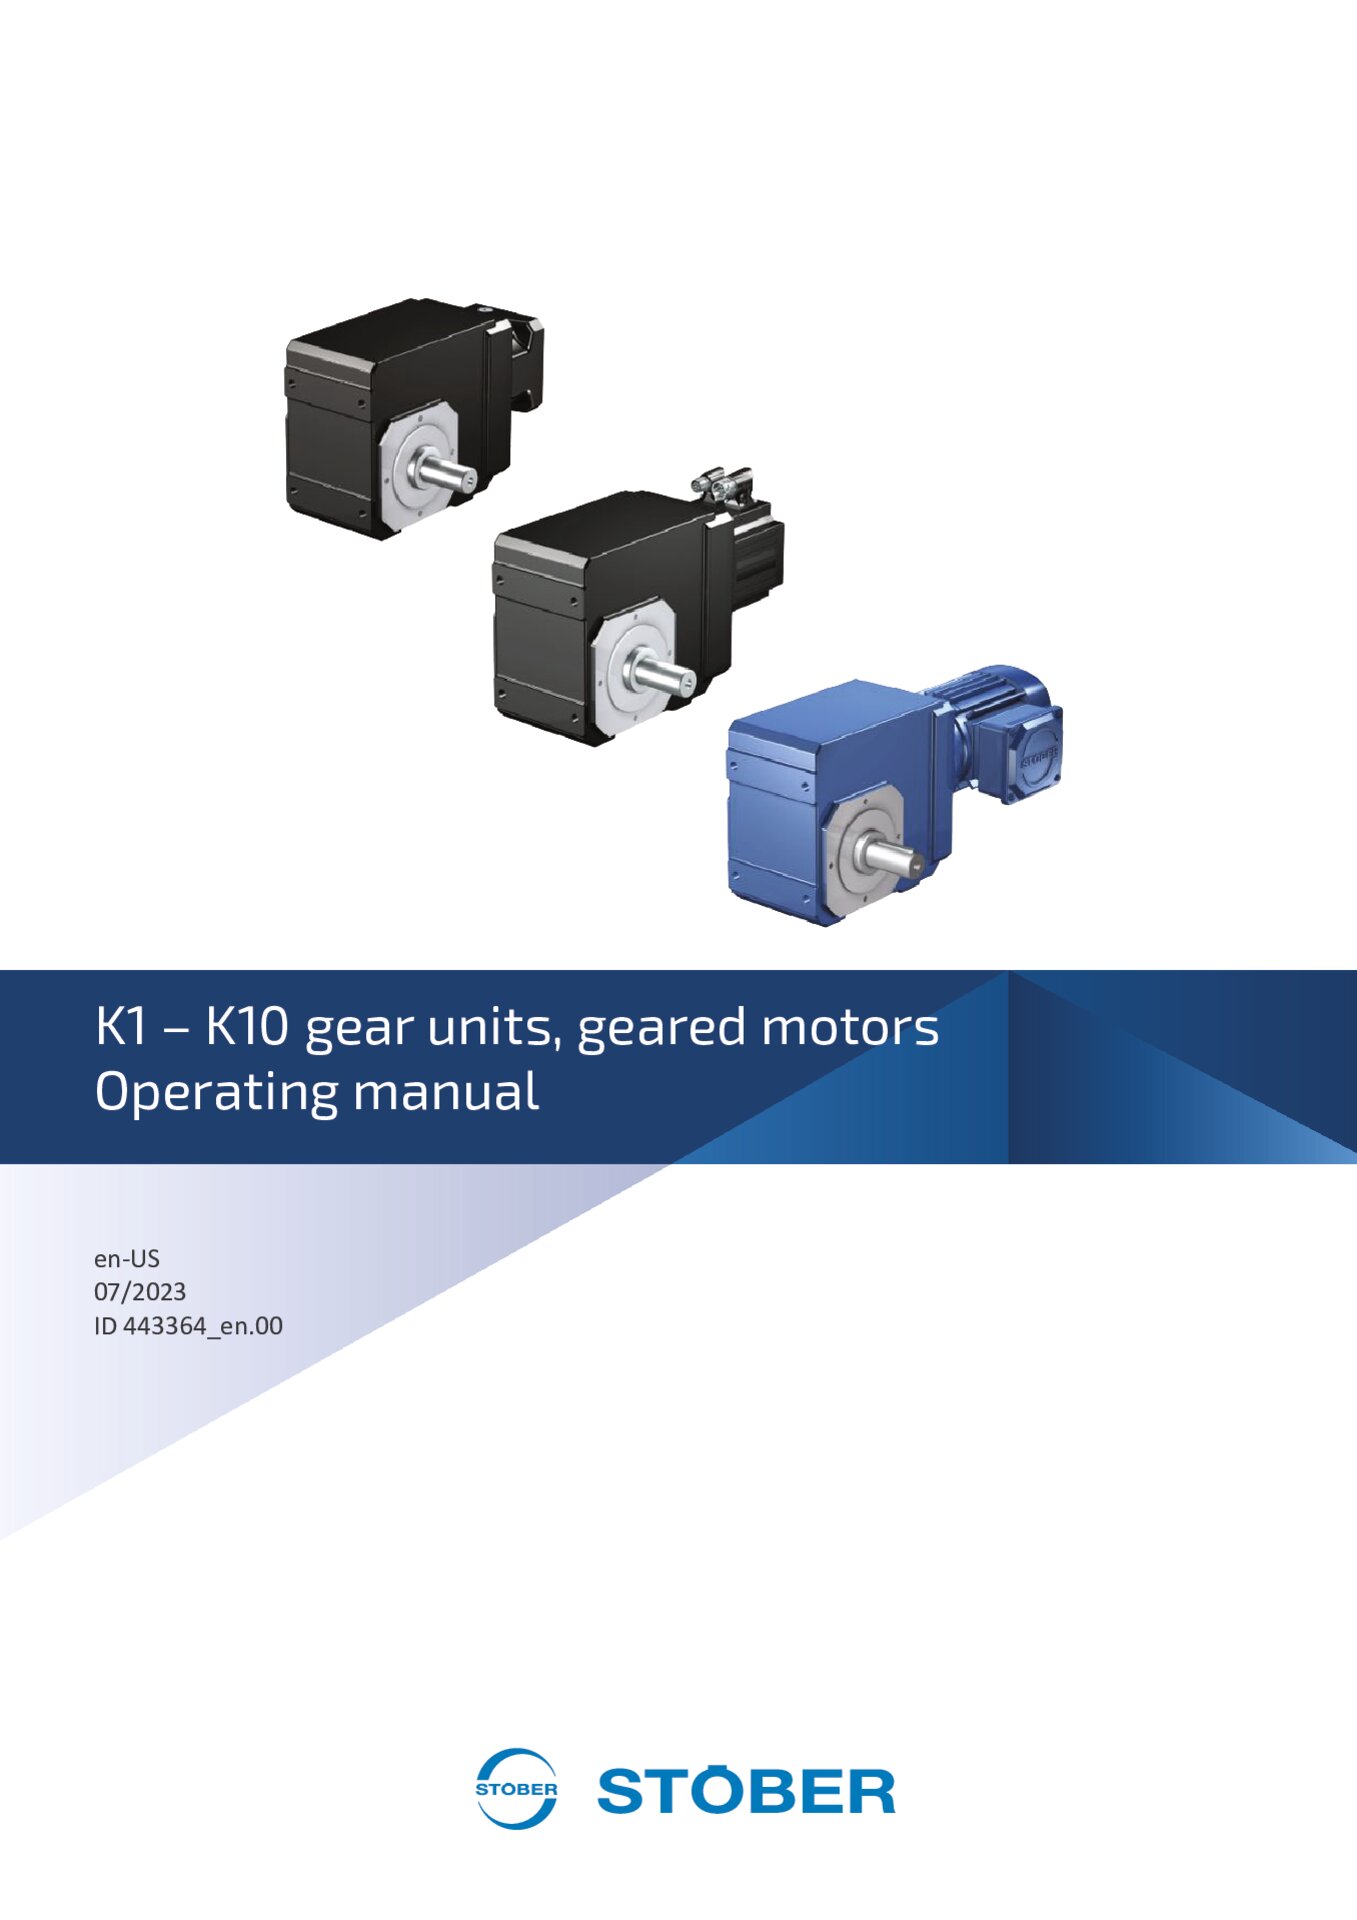 Operating manual K1 - K10 gear units and geared motors